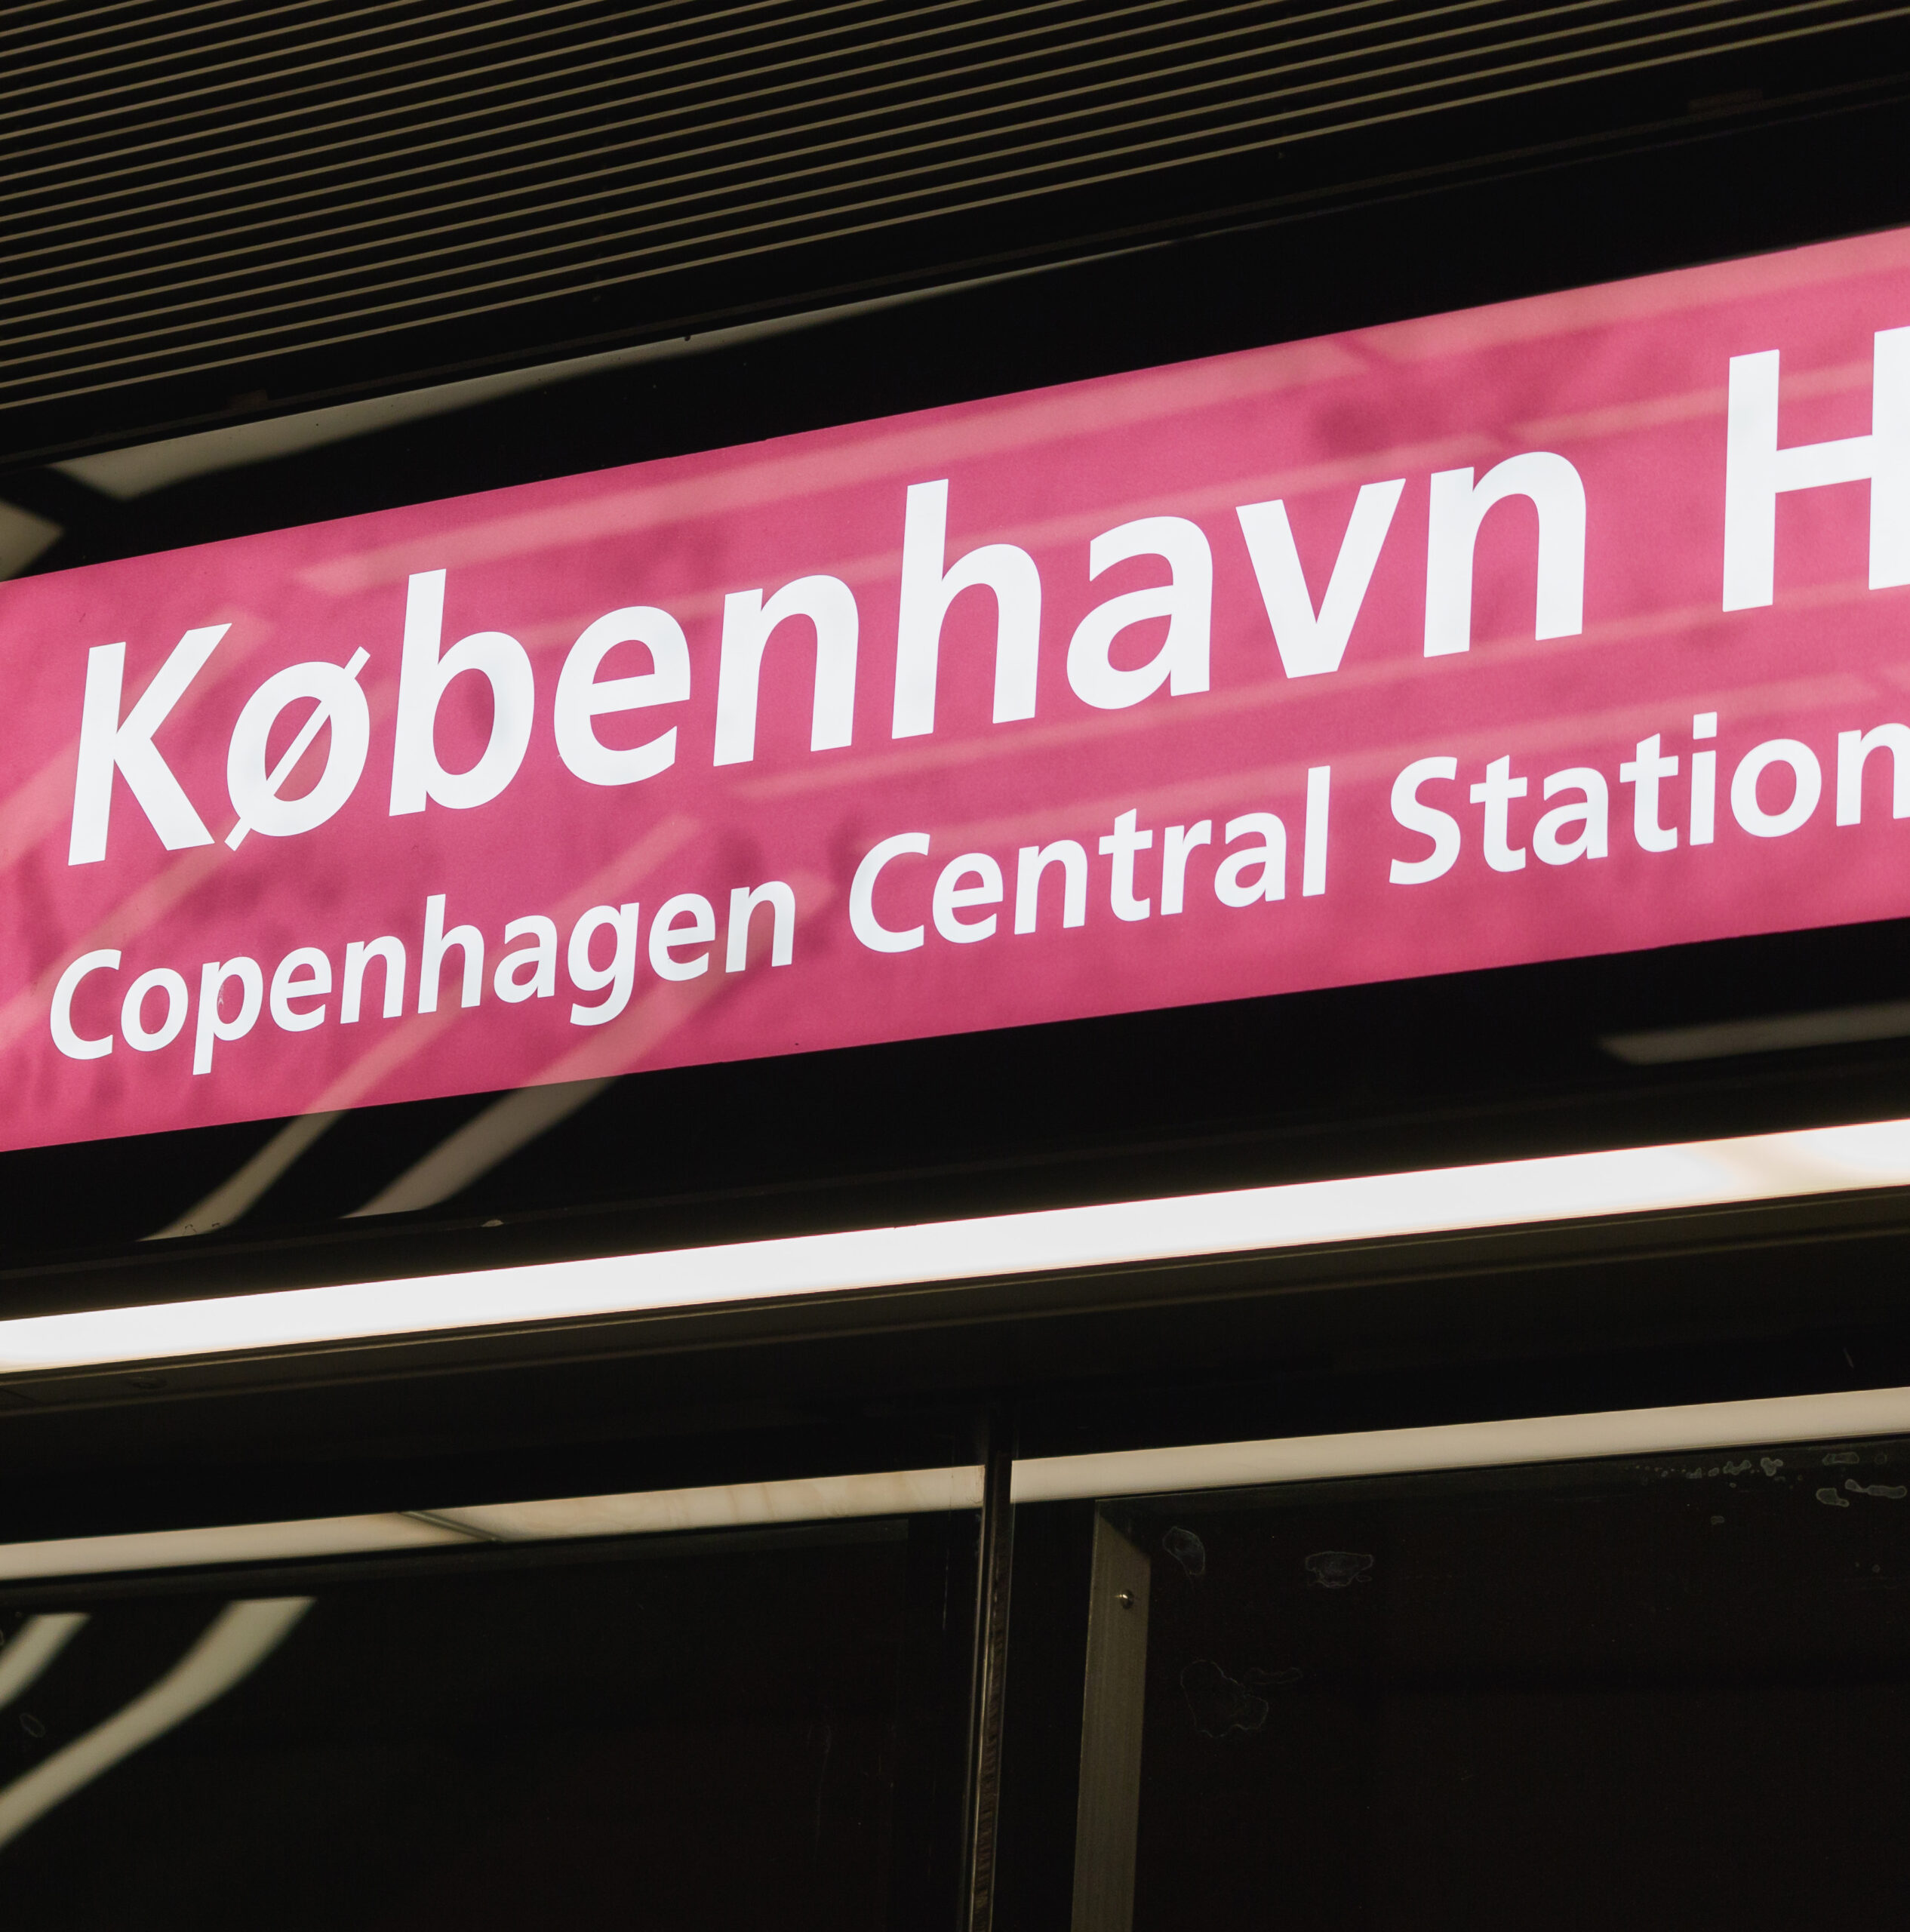 Метрополітен Копенгагена Cityringen (кільцева лінія): зменшення ризиків за допомогою прогресивних гарантій